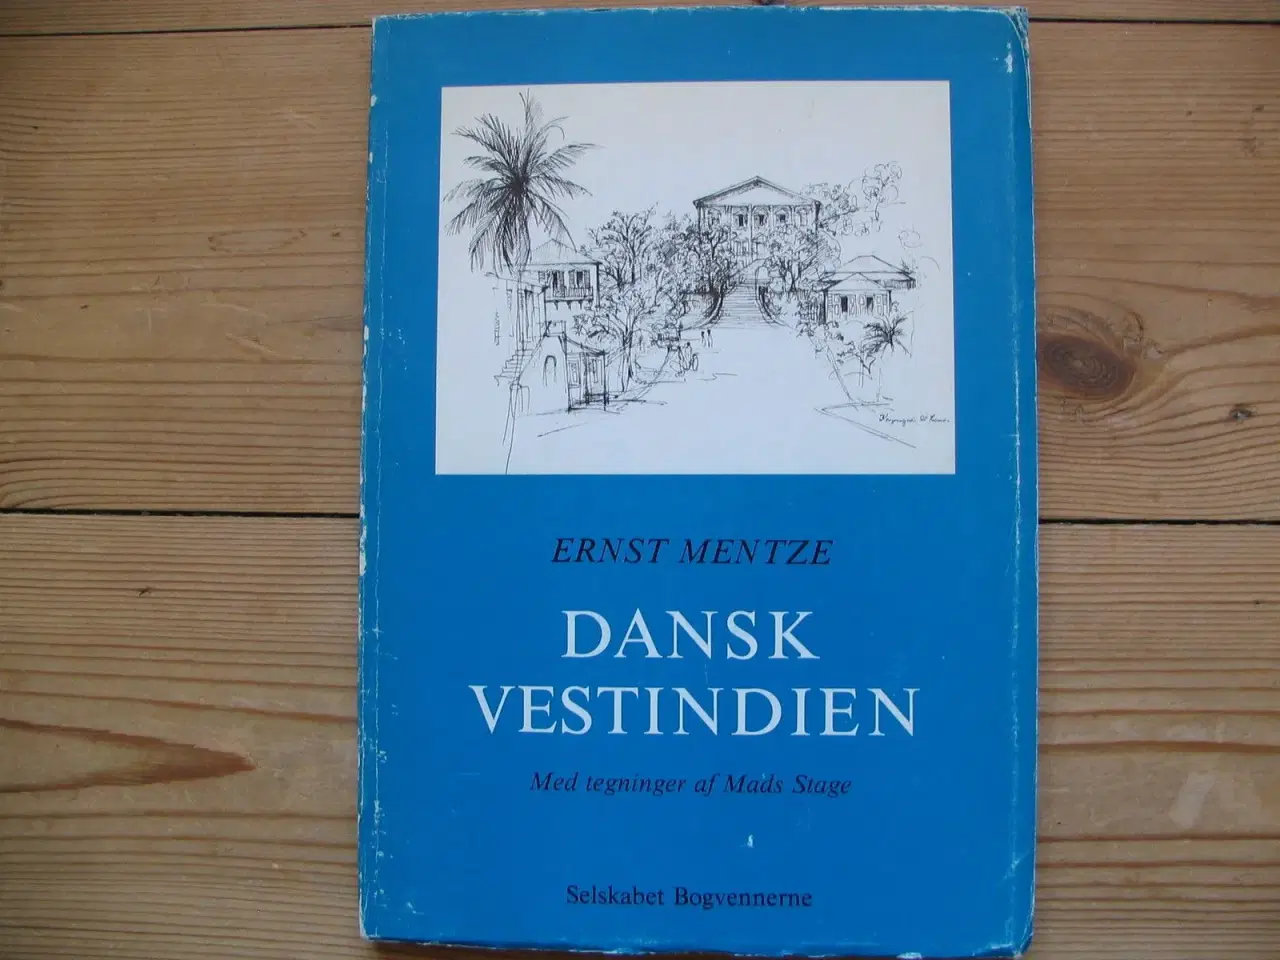 Billede 1 - Dansk Vestindien, Ernst Mentze, 1981